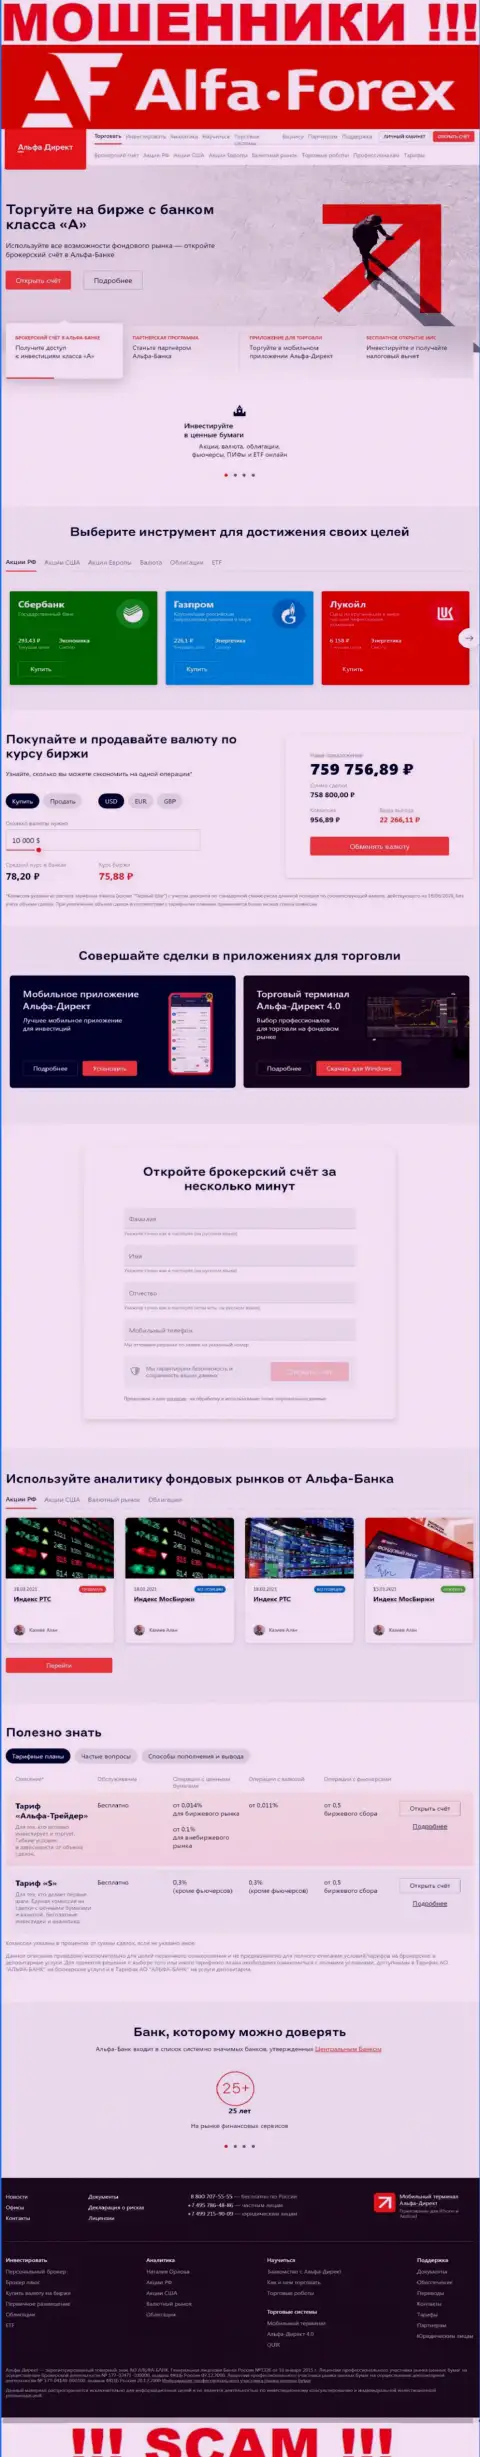 Alfadirect Ru - это официальный web-сервис мошенников Альфа Форекс